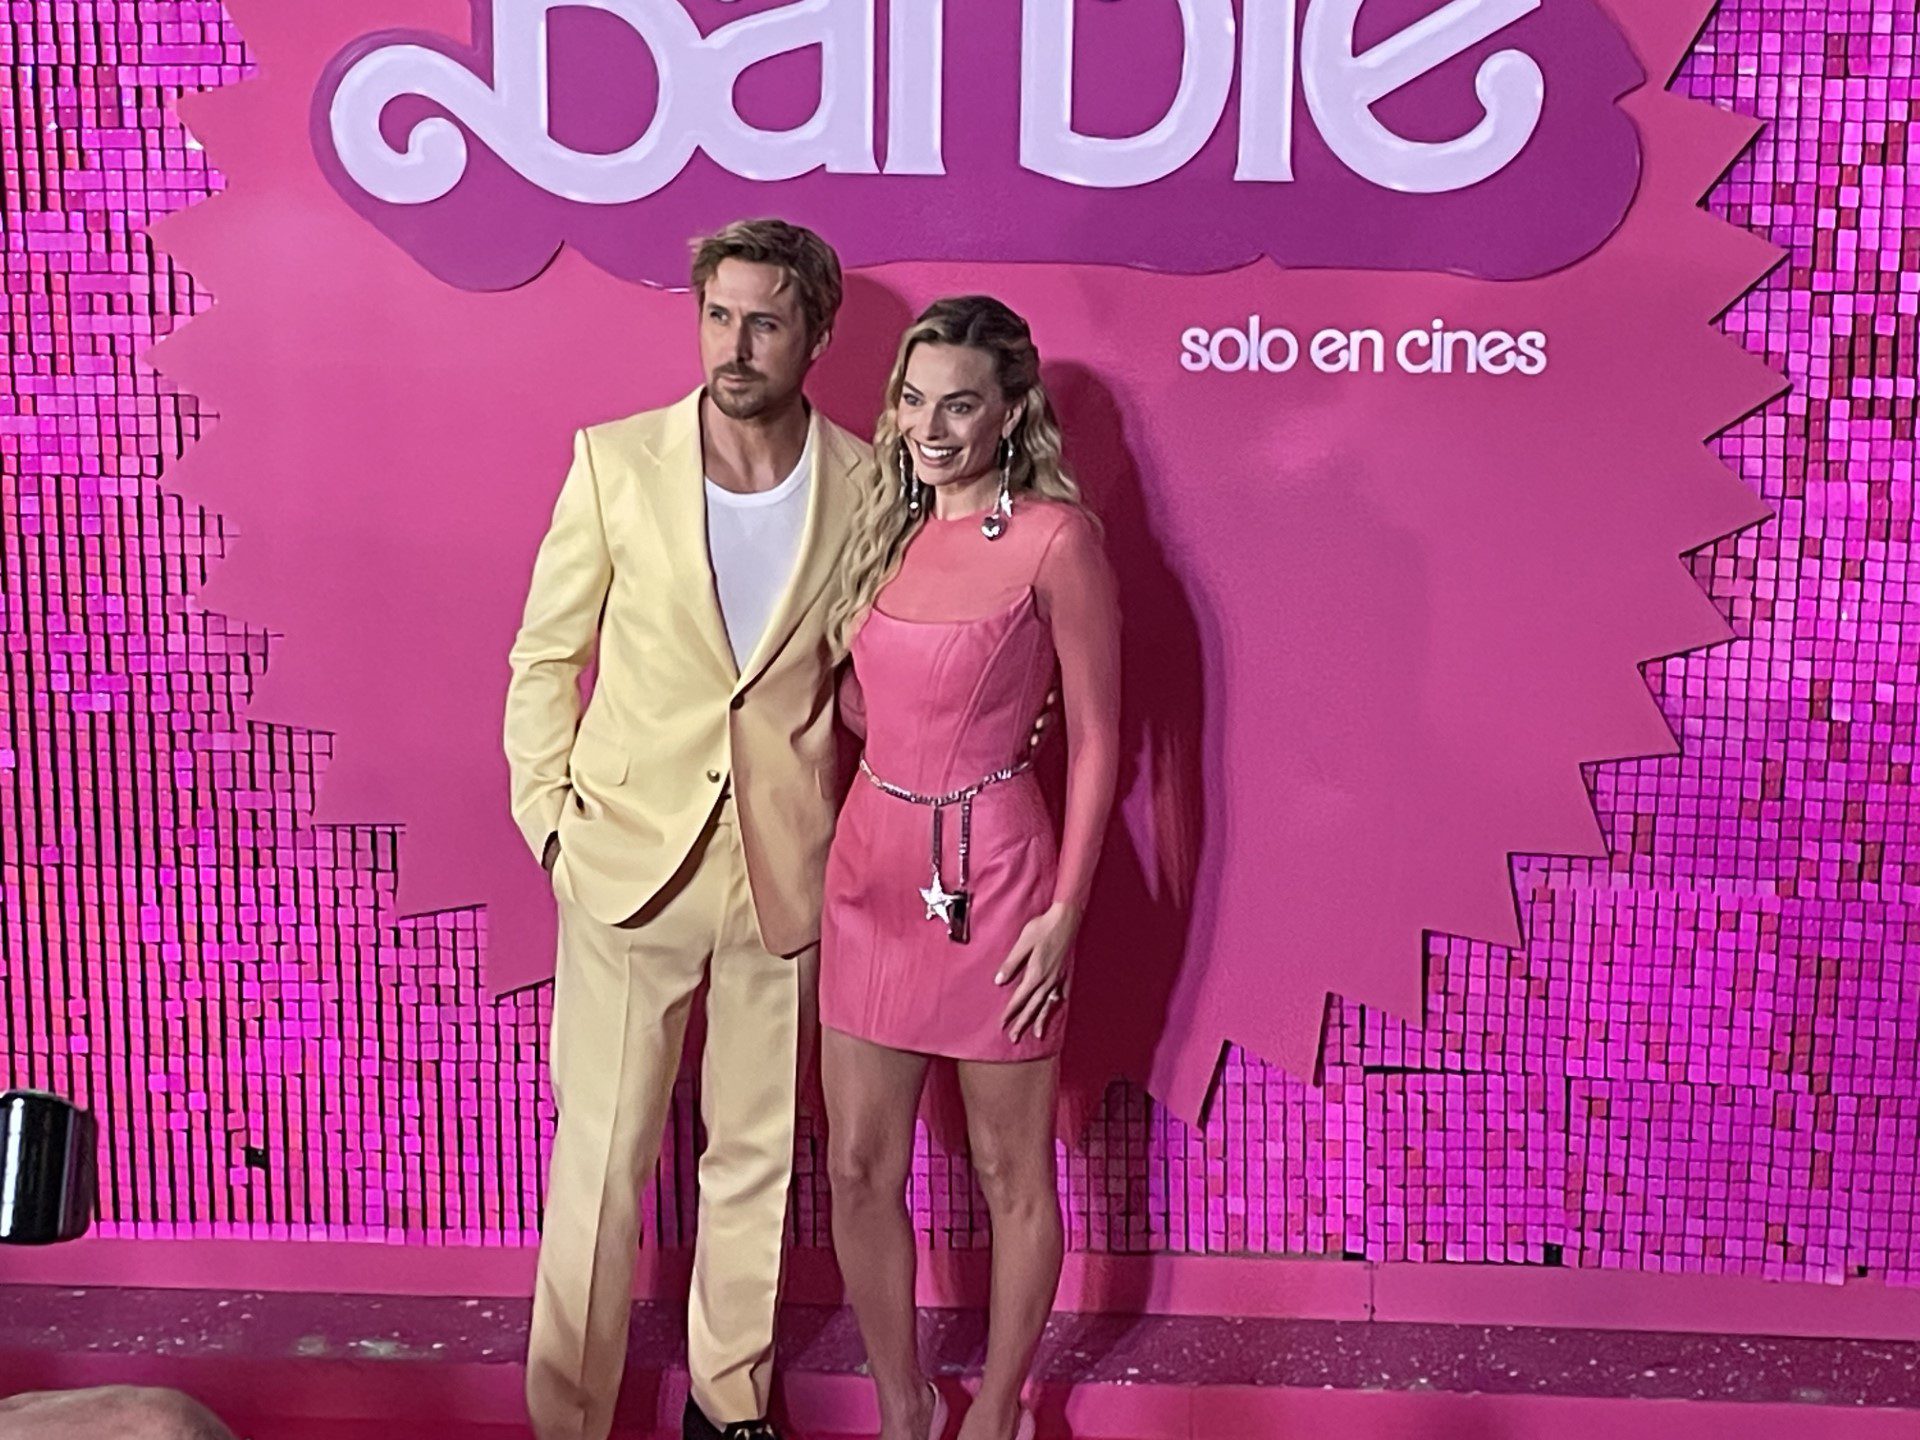 La alfombra rosa en el estreno europeo de 'Barbie' en el centro de Londres